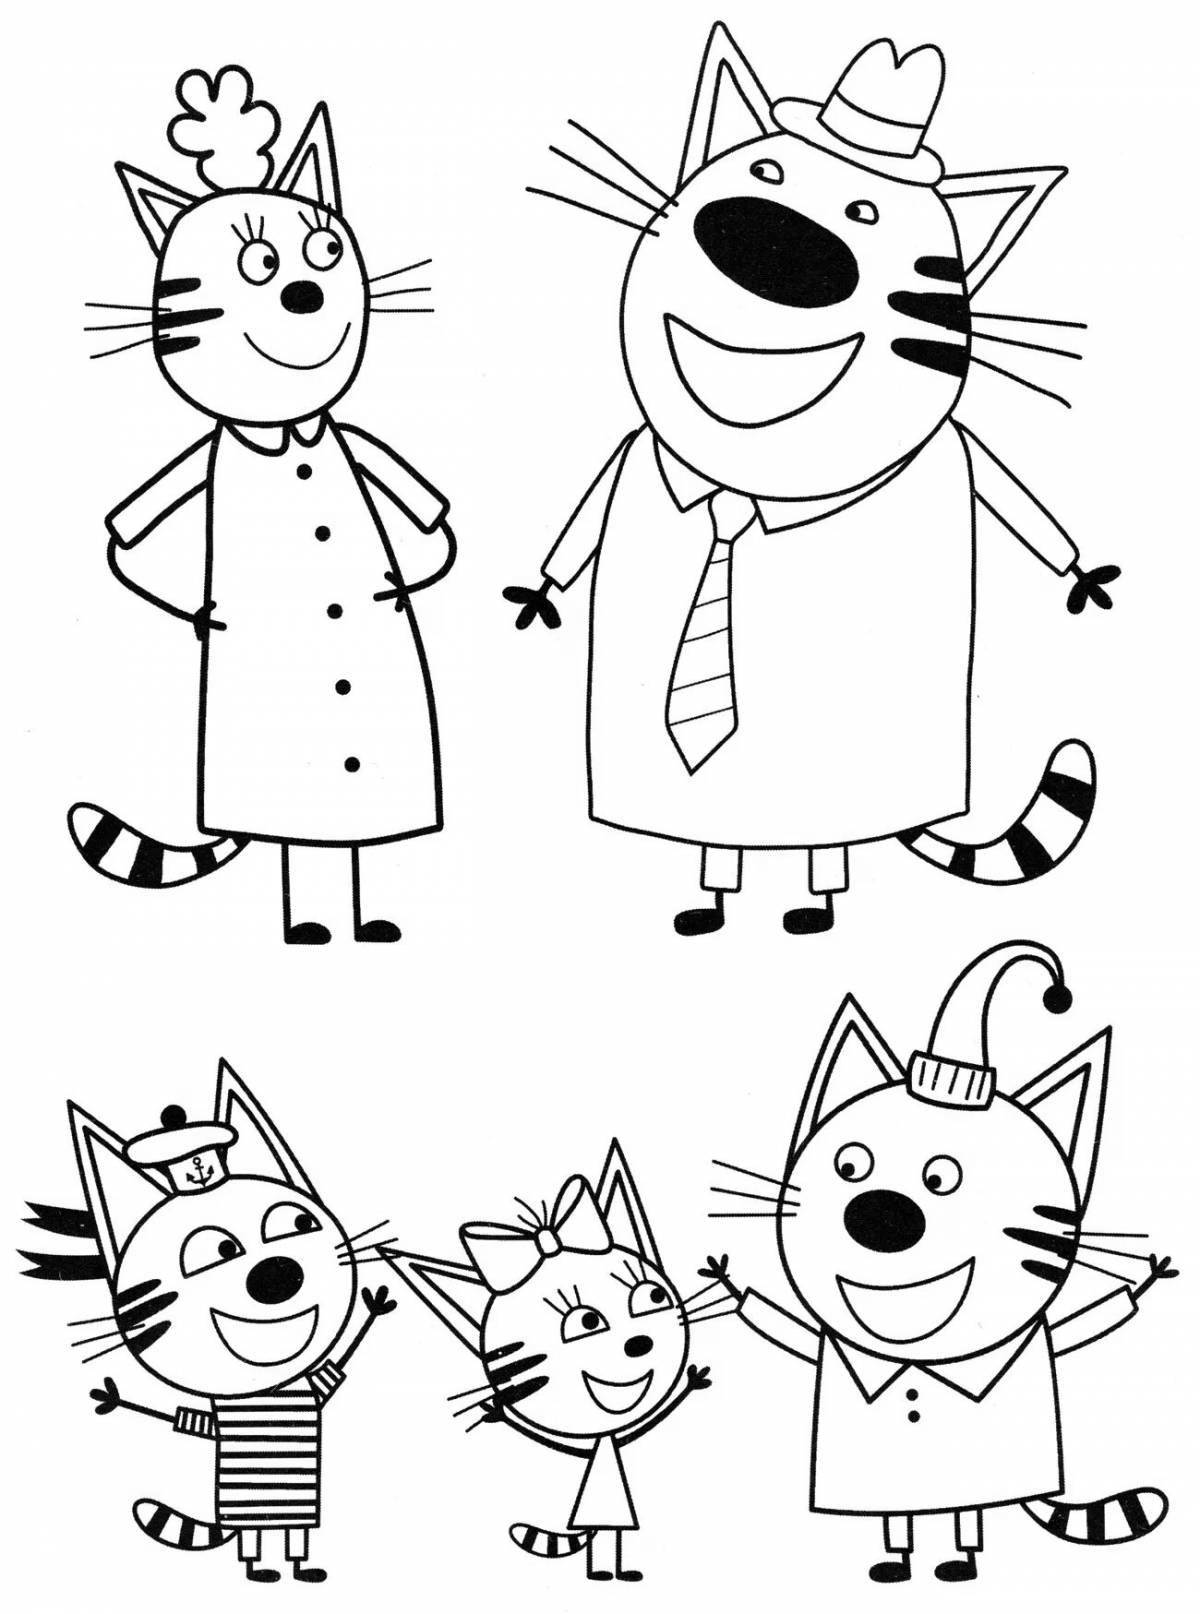 Three cats smiling cartoon